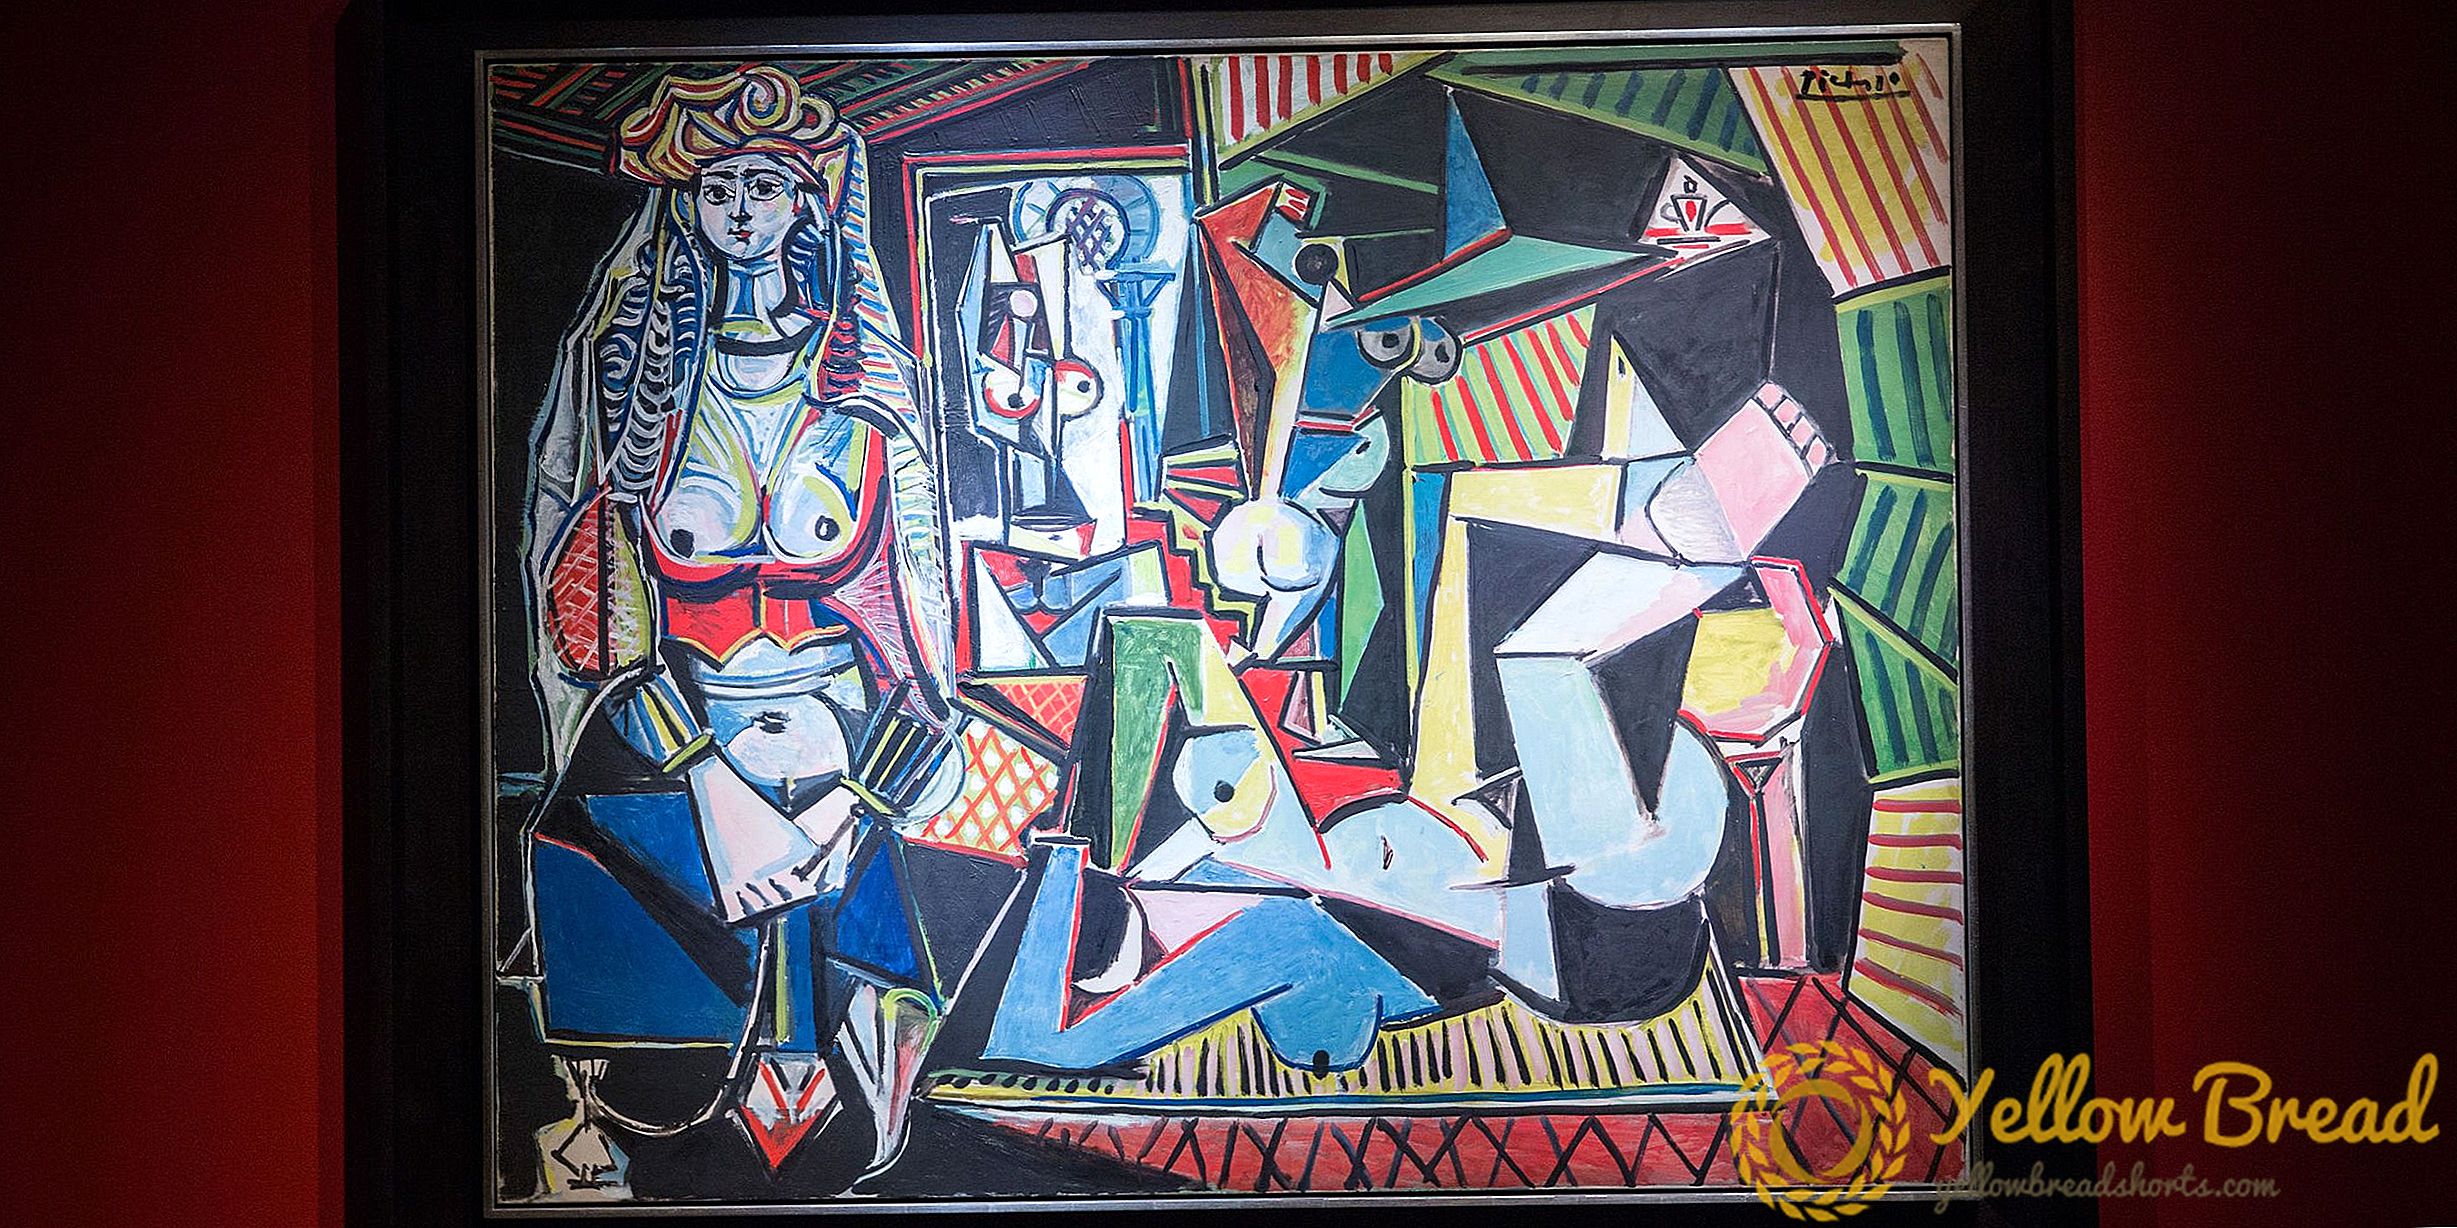 $ 175 millóns Picasso é a pintura máis cara que xa se venderon en poxa